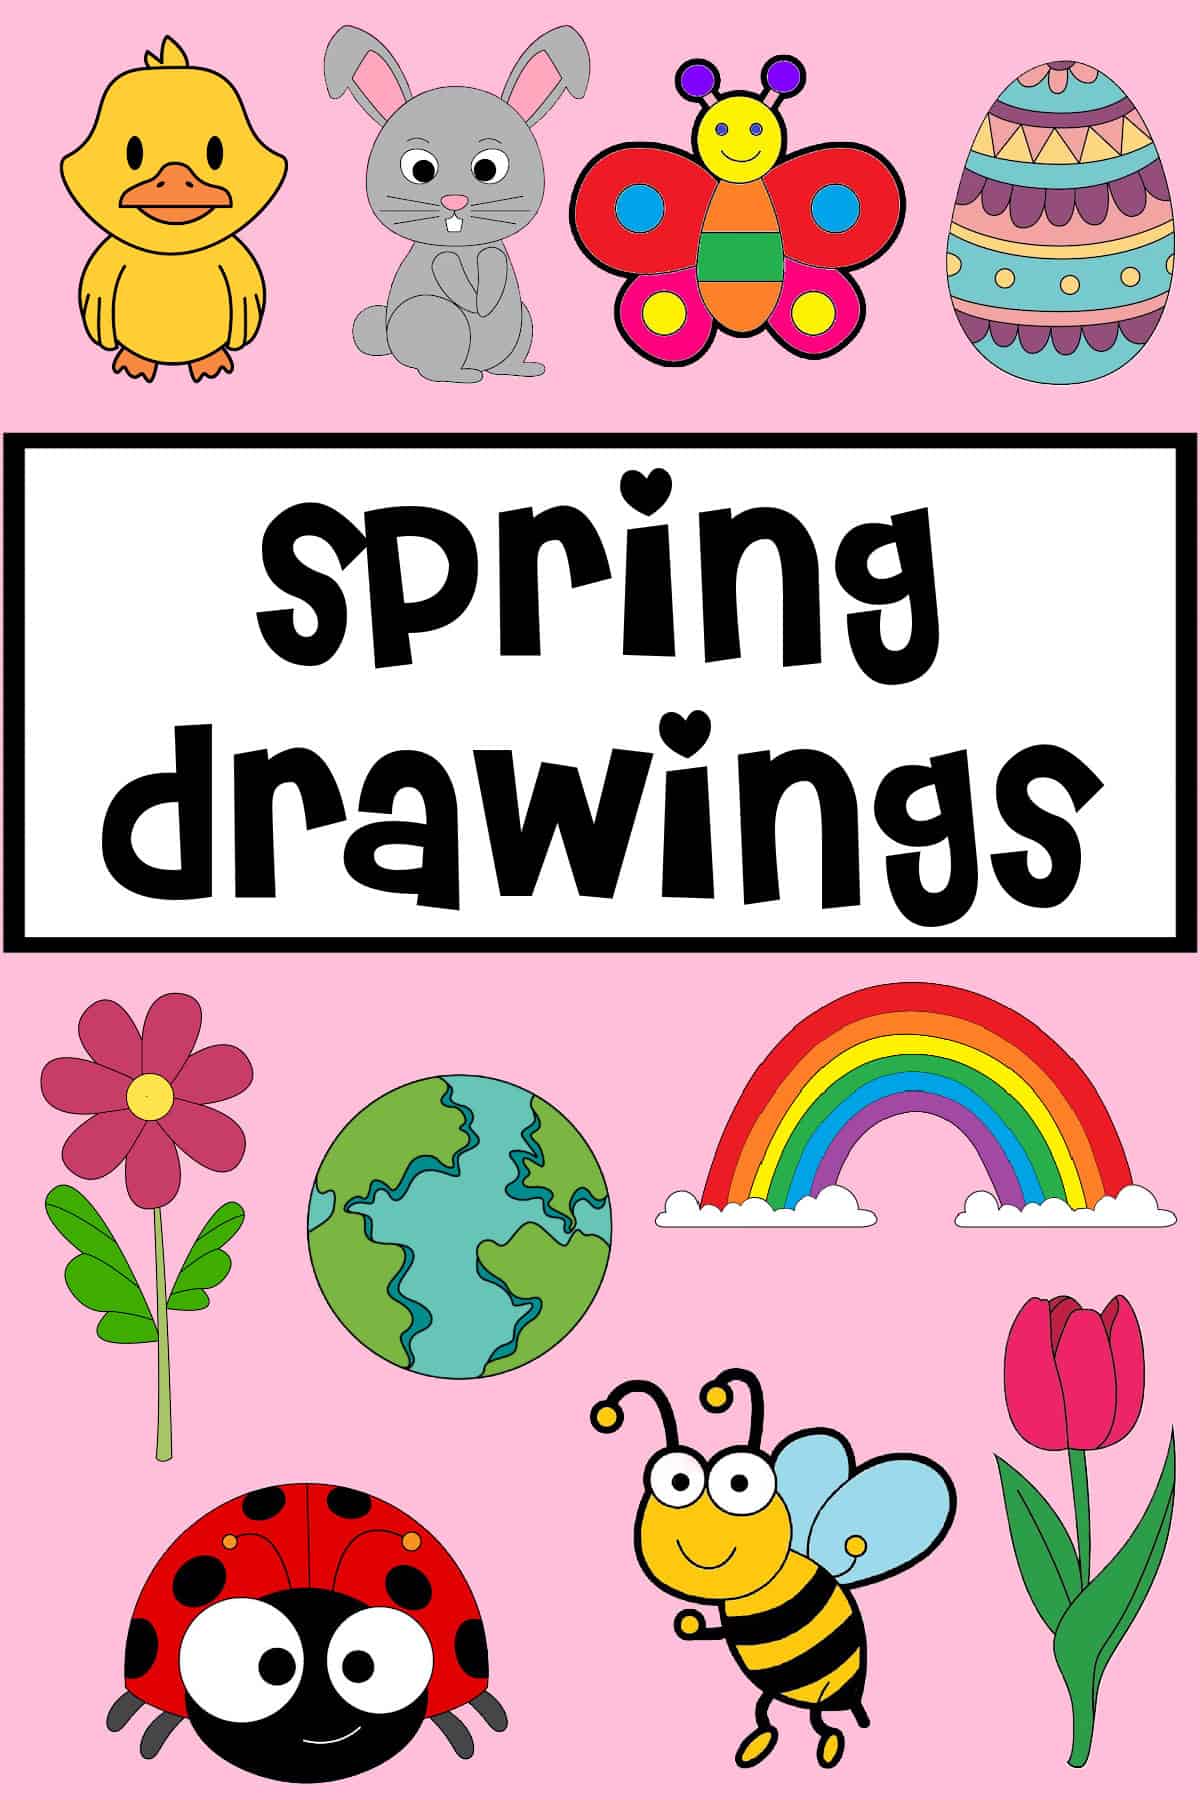 drawings of spring